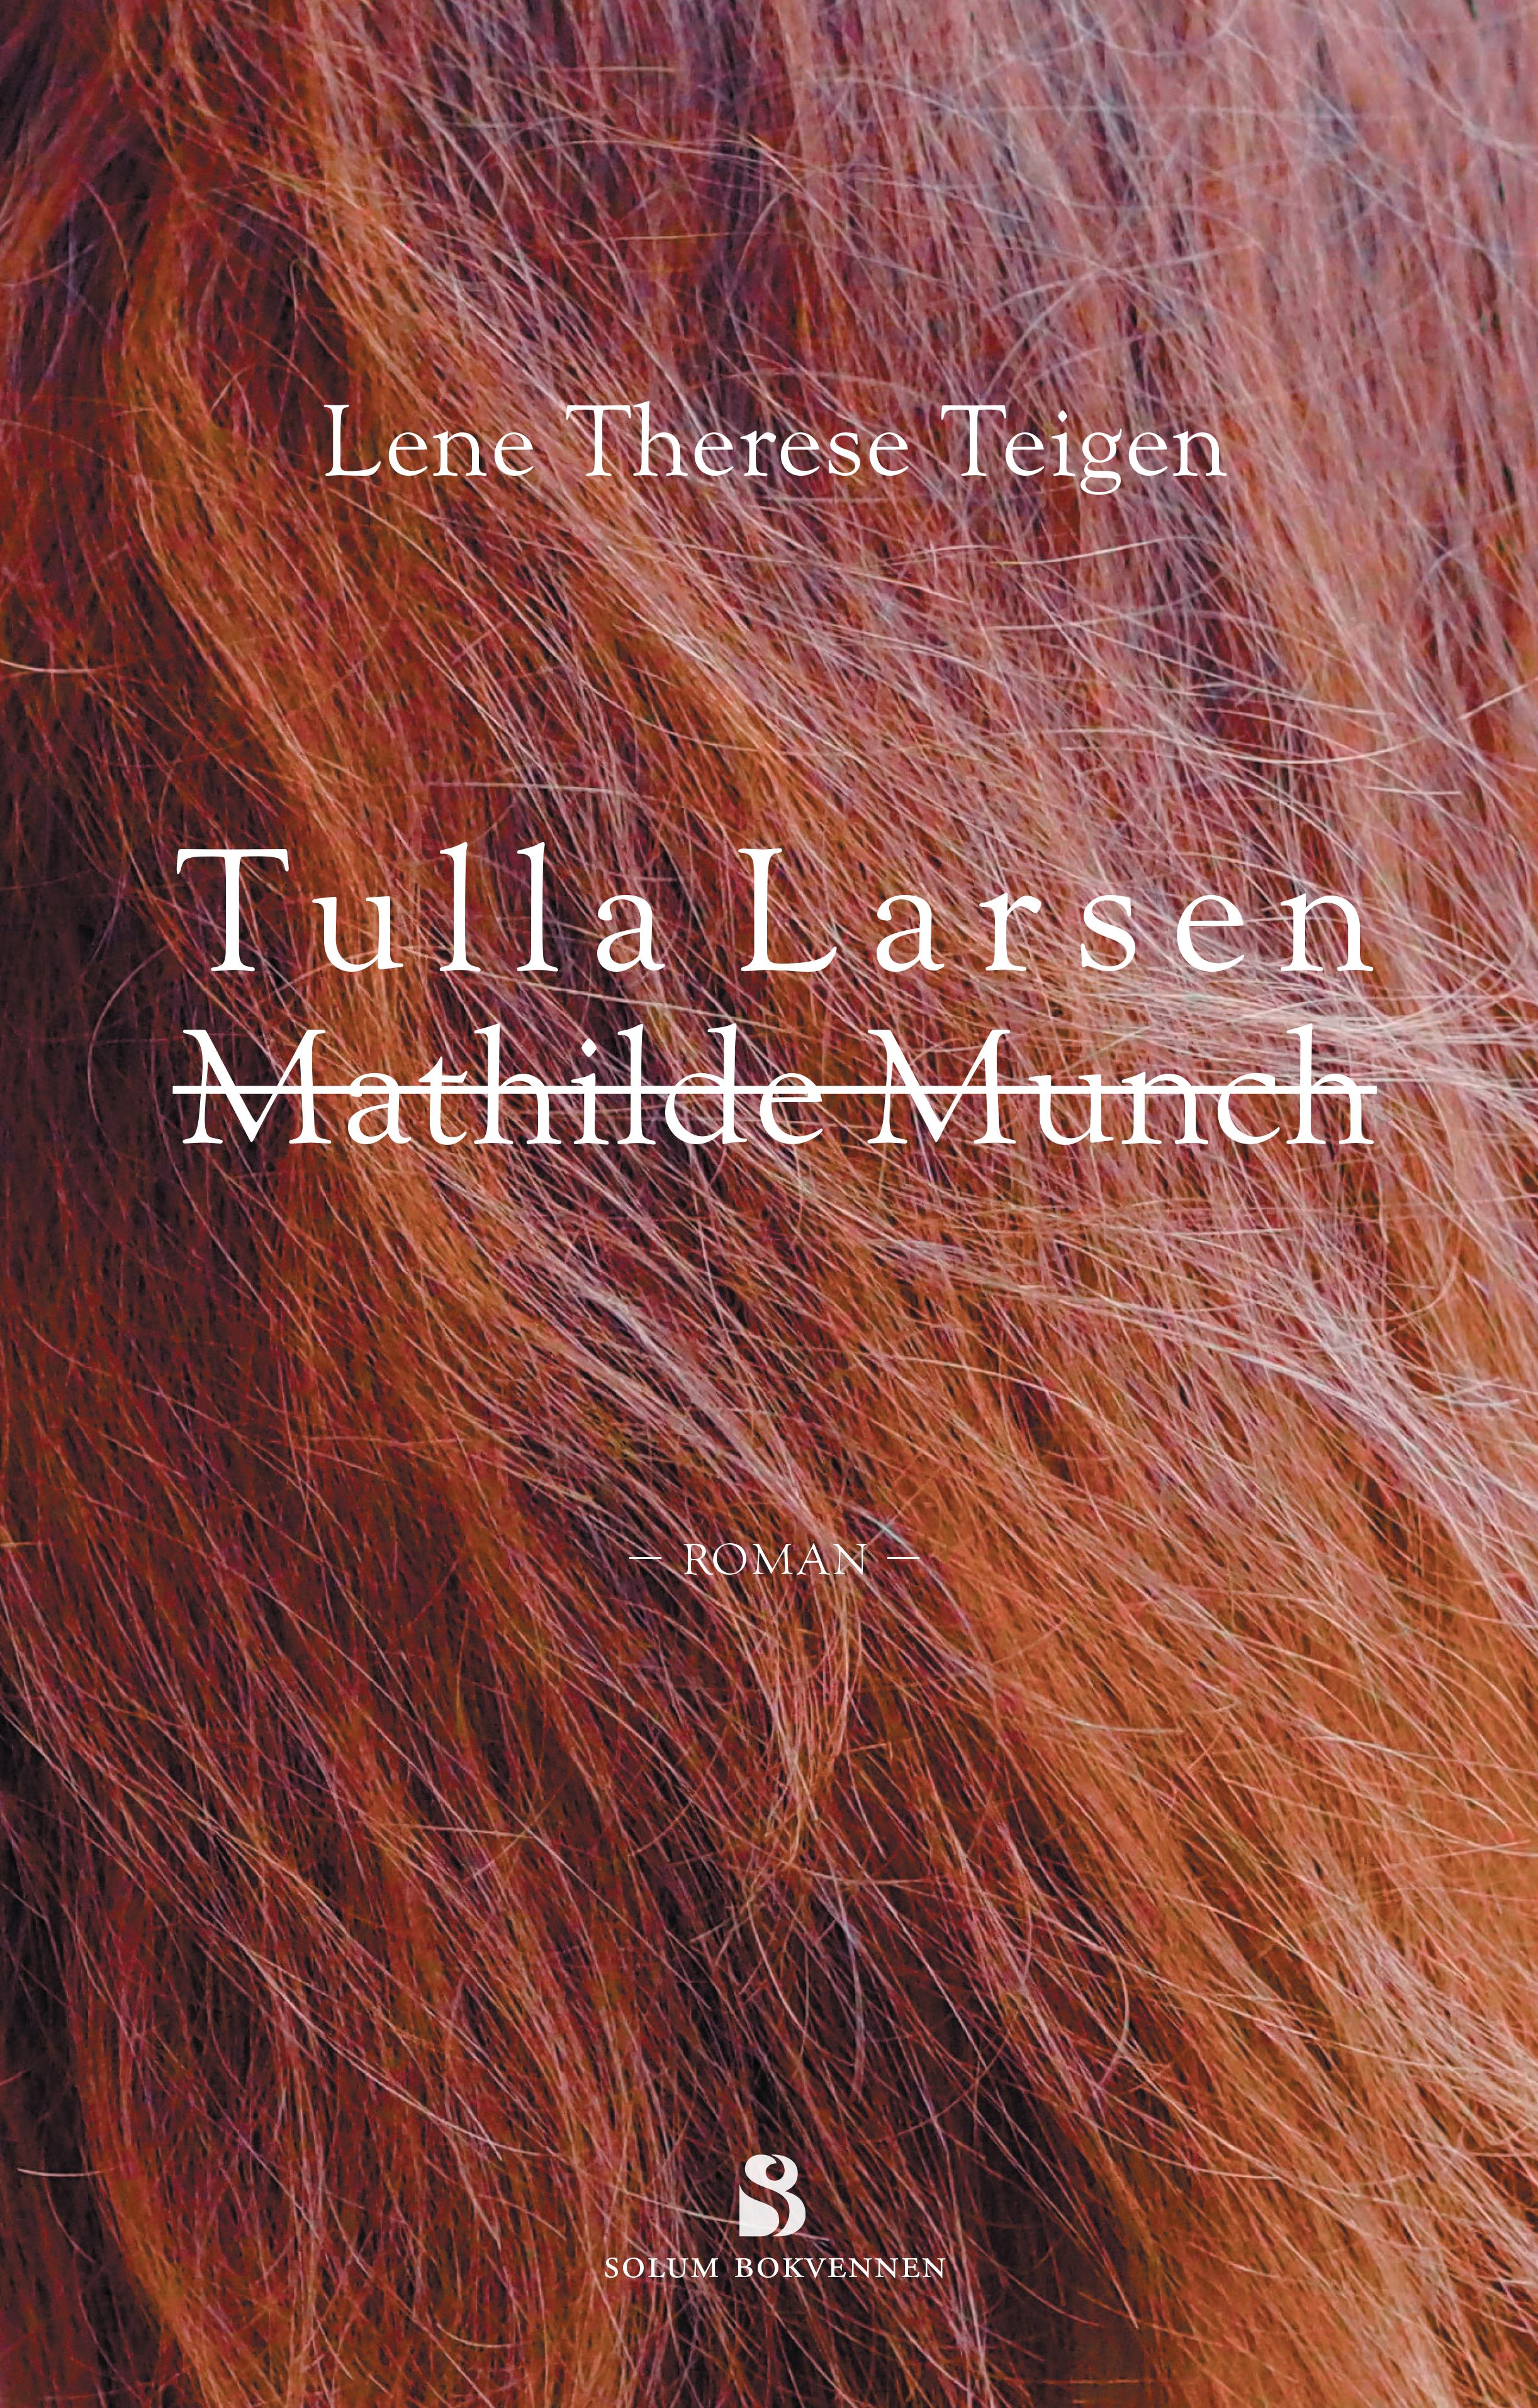 Tulla Larsen, Mathilde Munch: roman